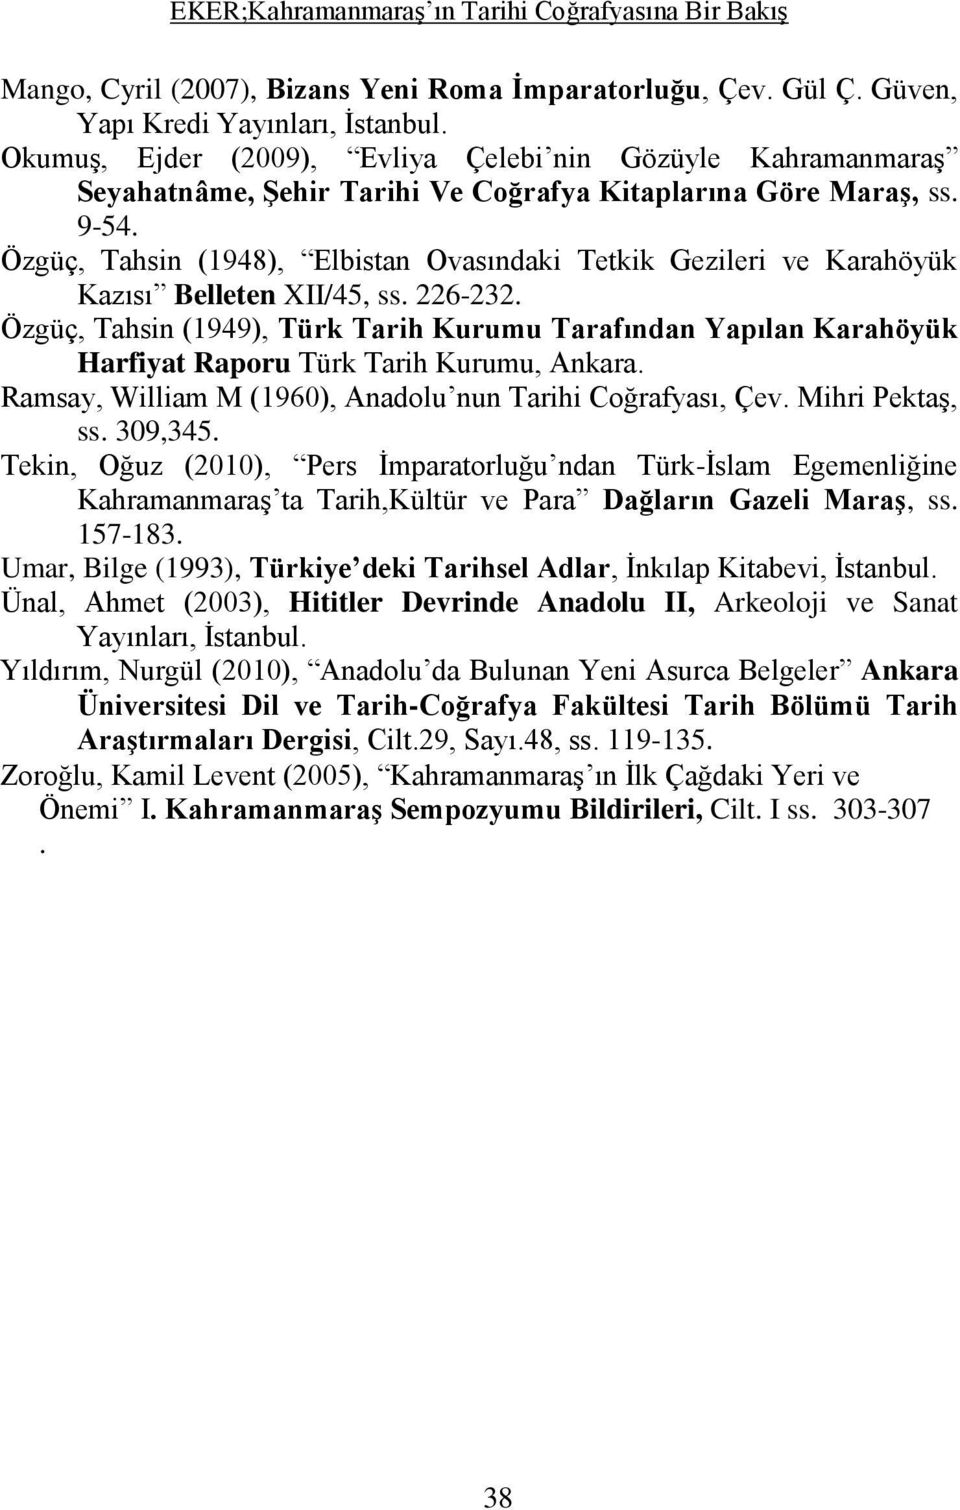 Özgüç, Tahsin (1948), Elbistan Ovasındaki Tetkik Gezileri ve Karahöyük Kazısı Belleten XII/45, ss. 226-232.